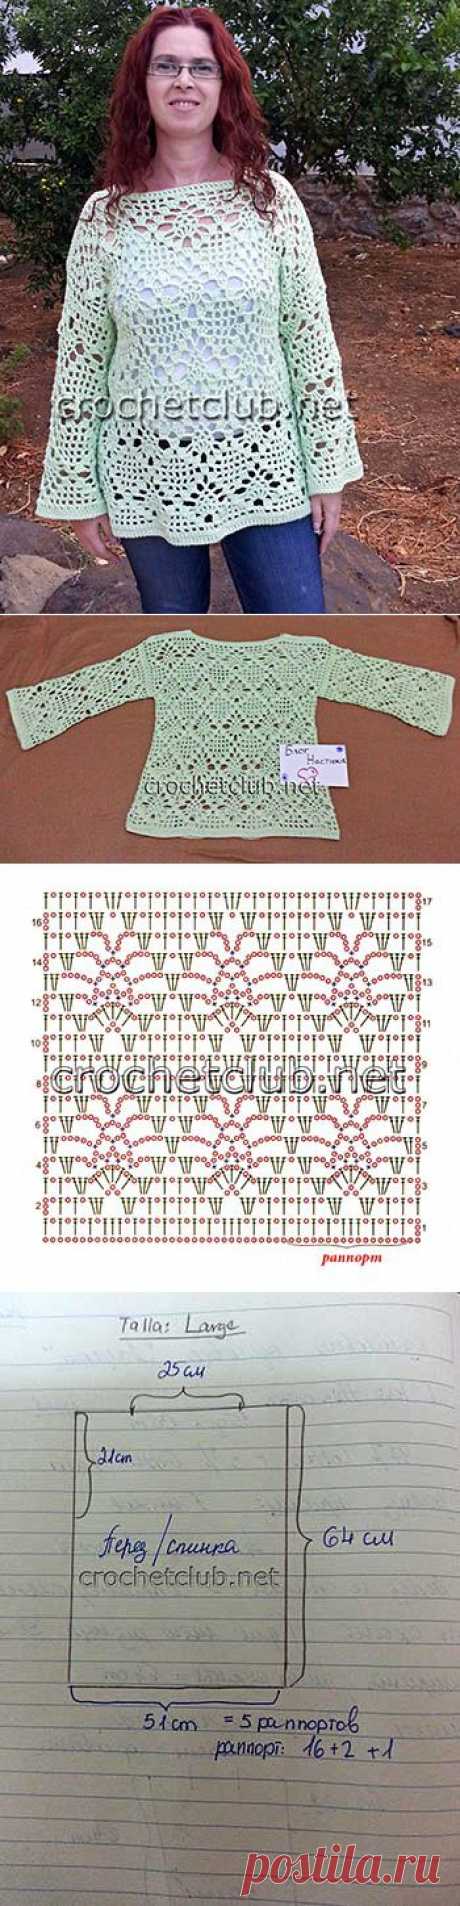 Ажурный пуловер крючком - Вязание Крючком. Блог Настика